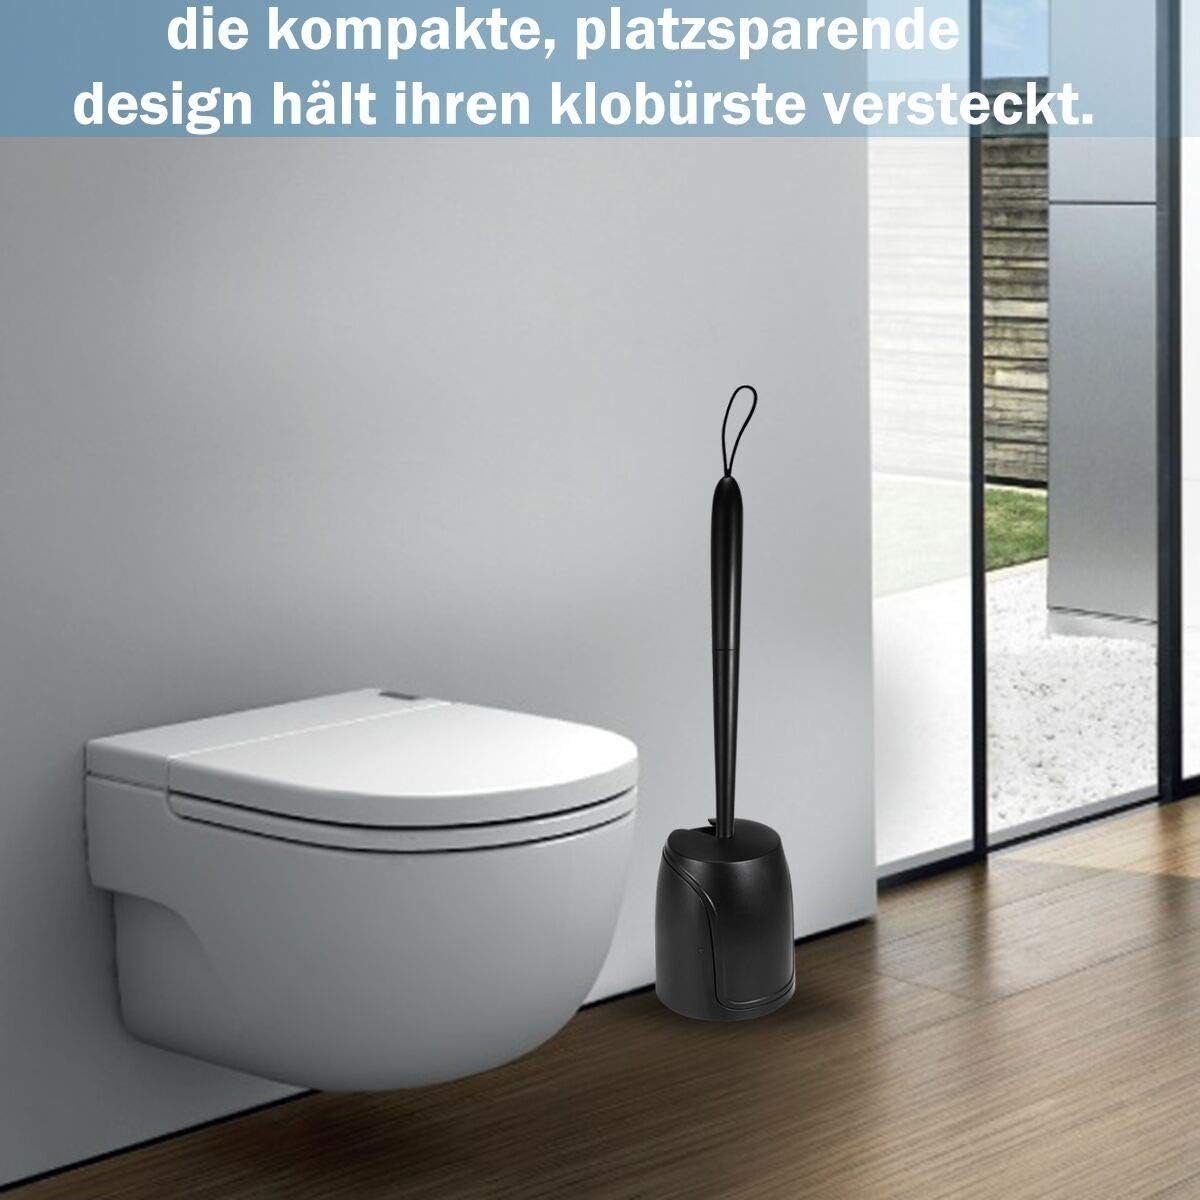 EBUY WC-Reinigungsbürste WC Bürste Halter Set, mit Keramikfliesen Toiletten, zum (1-tlg) Silikon von Ecken, Geeignet Reinigen und Toilettenbürste